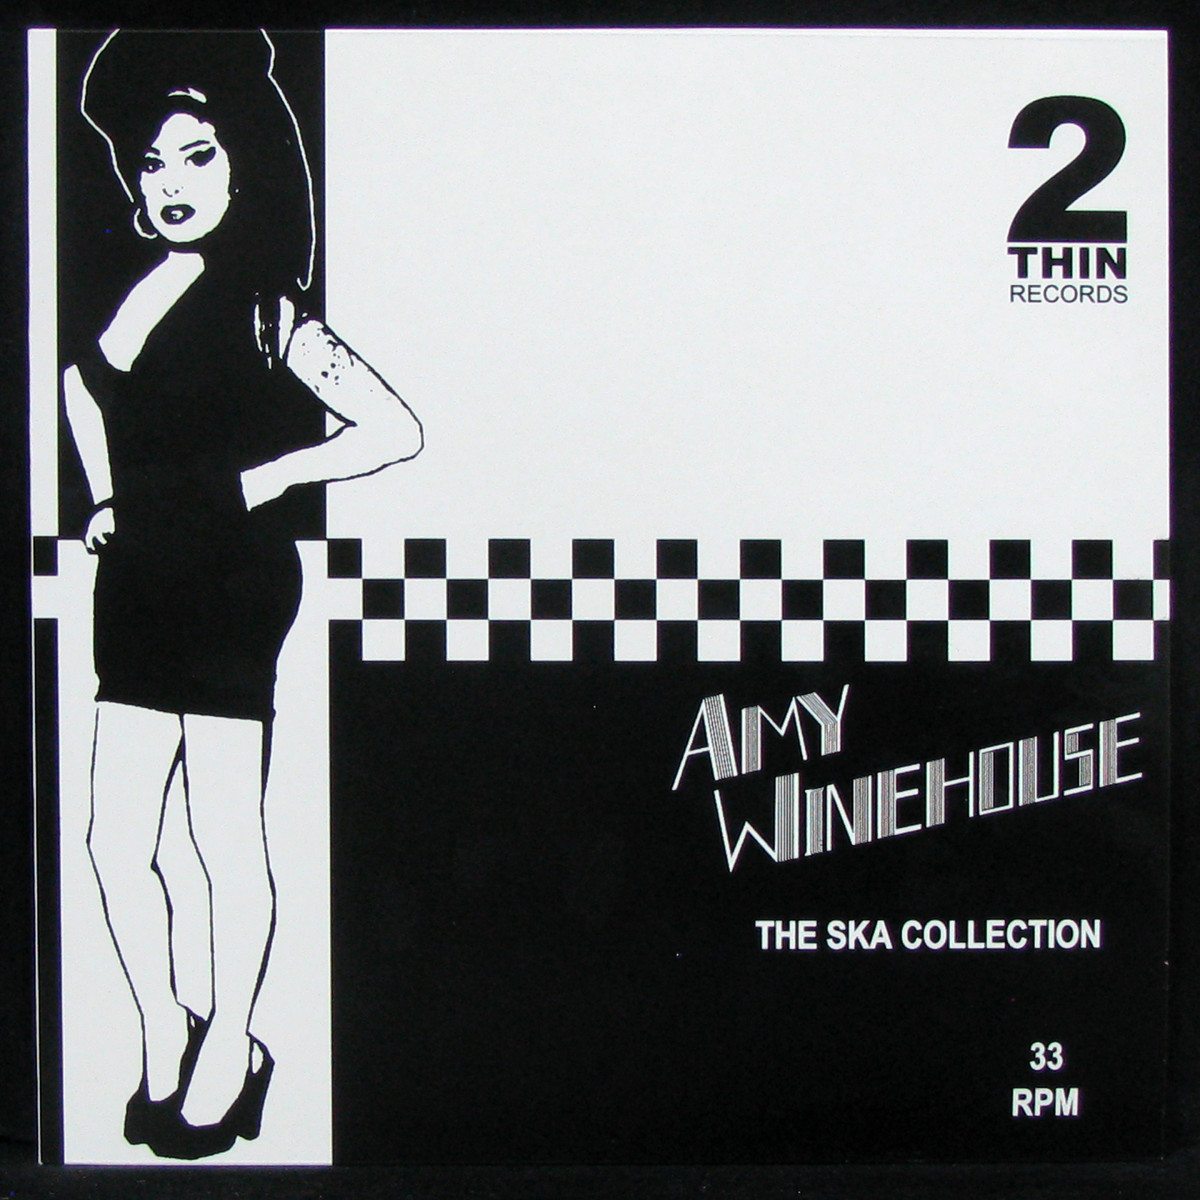 Vinilo Decorativo Amy Winehouse - 695 - Vinilo Decorativo de